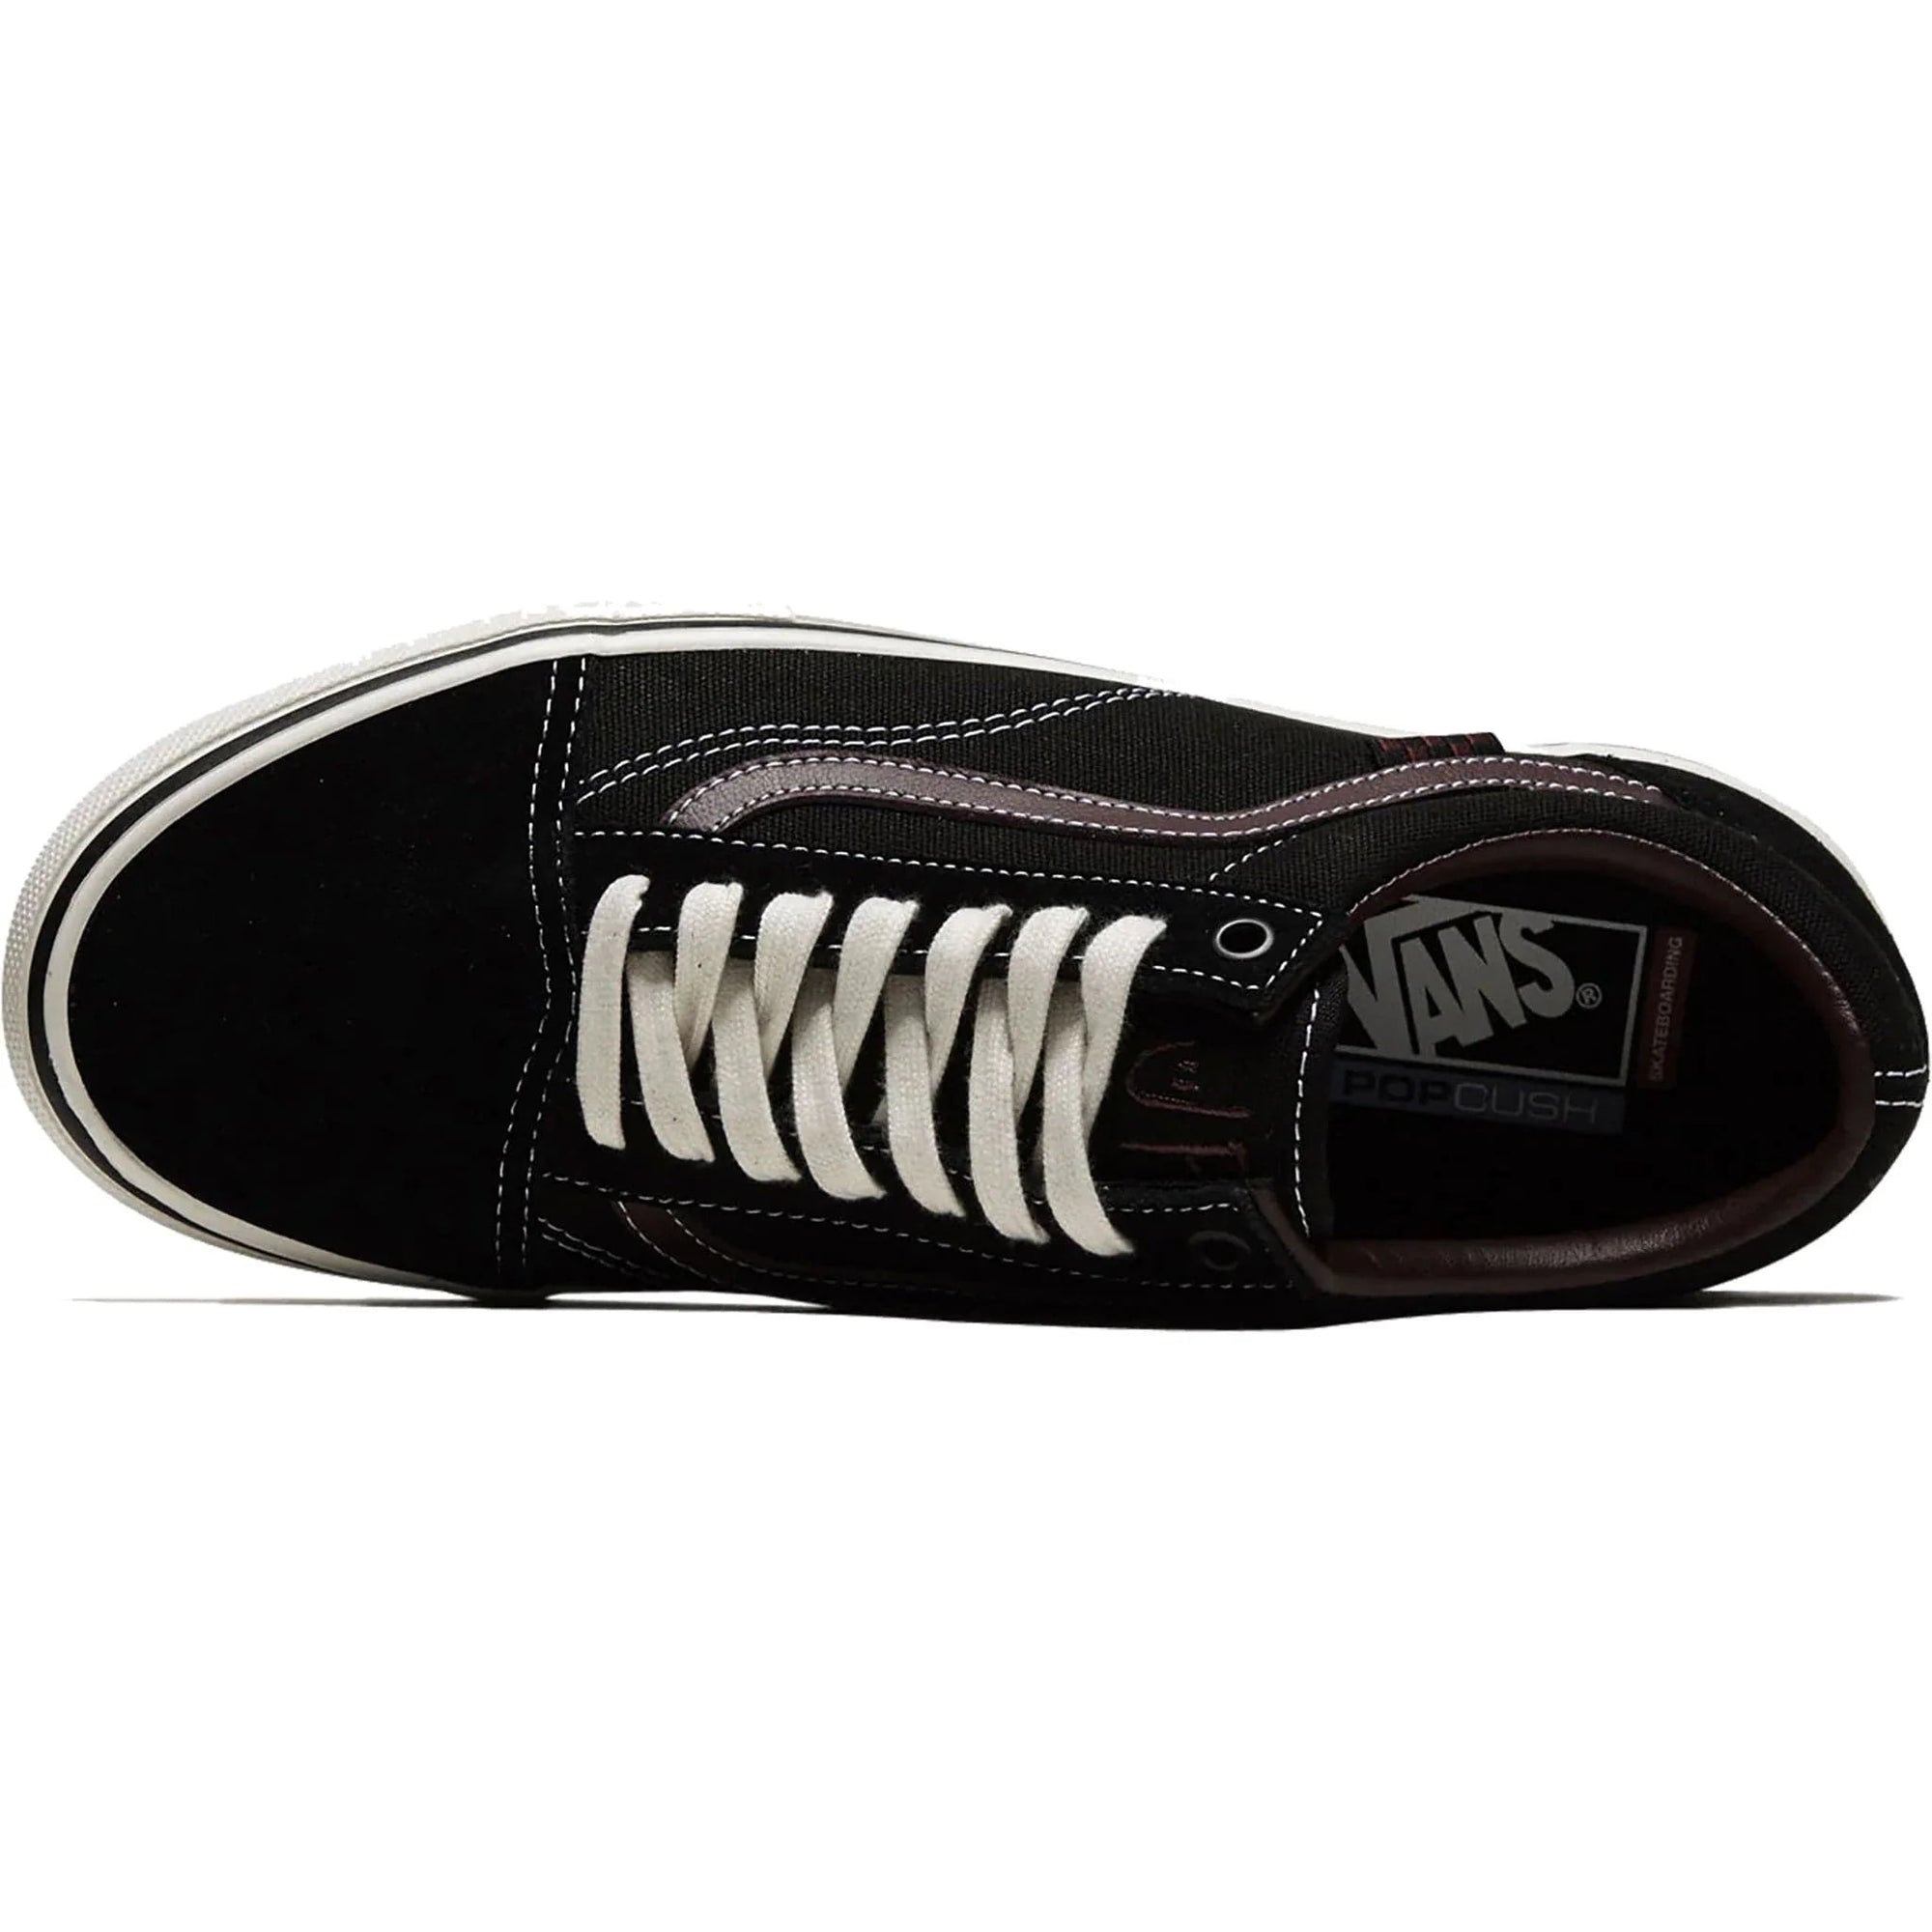 VANS Jill Perkins Skate Old Skool Shoes Black/Burgundy Men's Skate Shoes Vans 